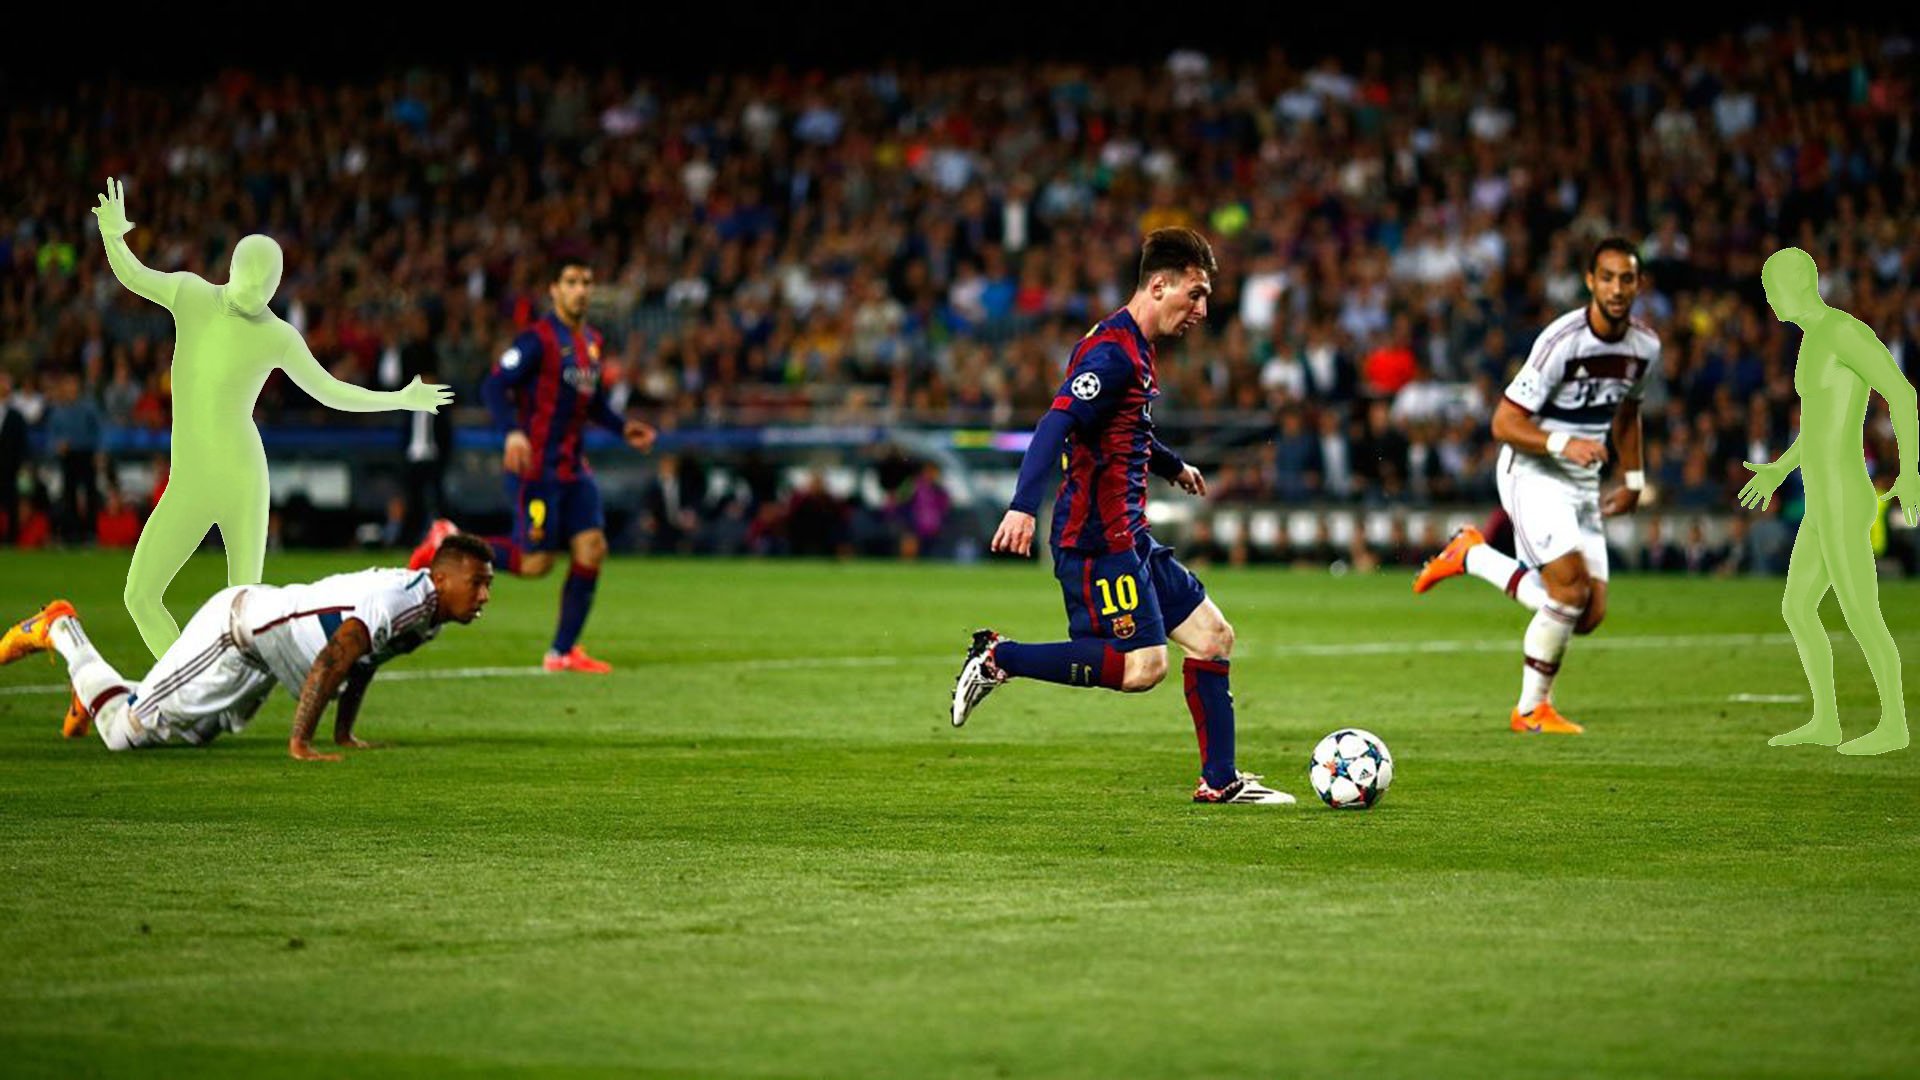 L'arnaque Lionel Messi enfin dévoilée ! sur JvArchive forum 18-25 ...